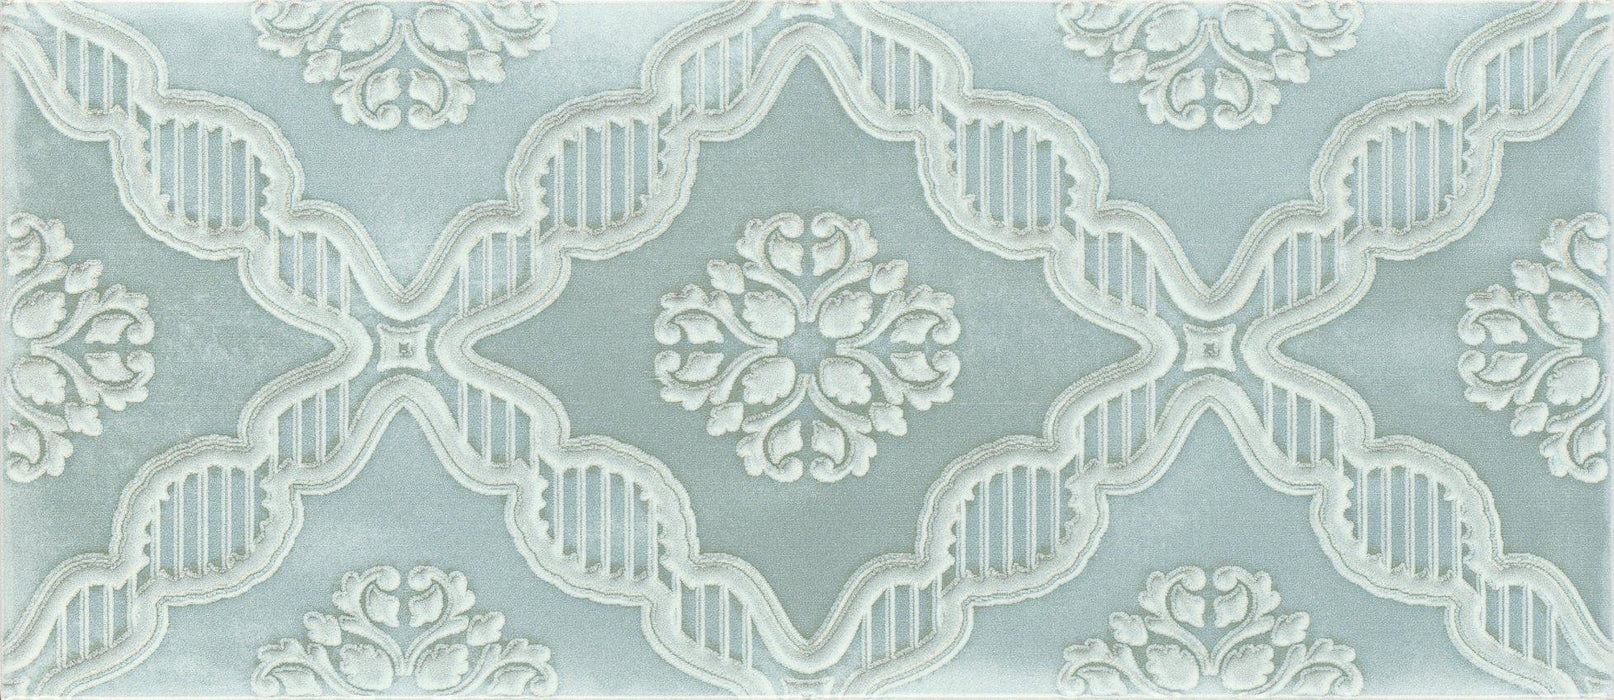 Maiolica Chantilly Macrame Aqua Glossy 4x10 Ceramic  Tile